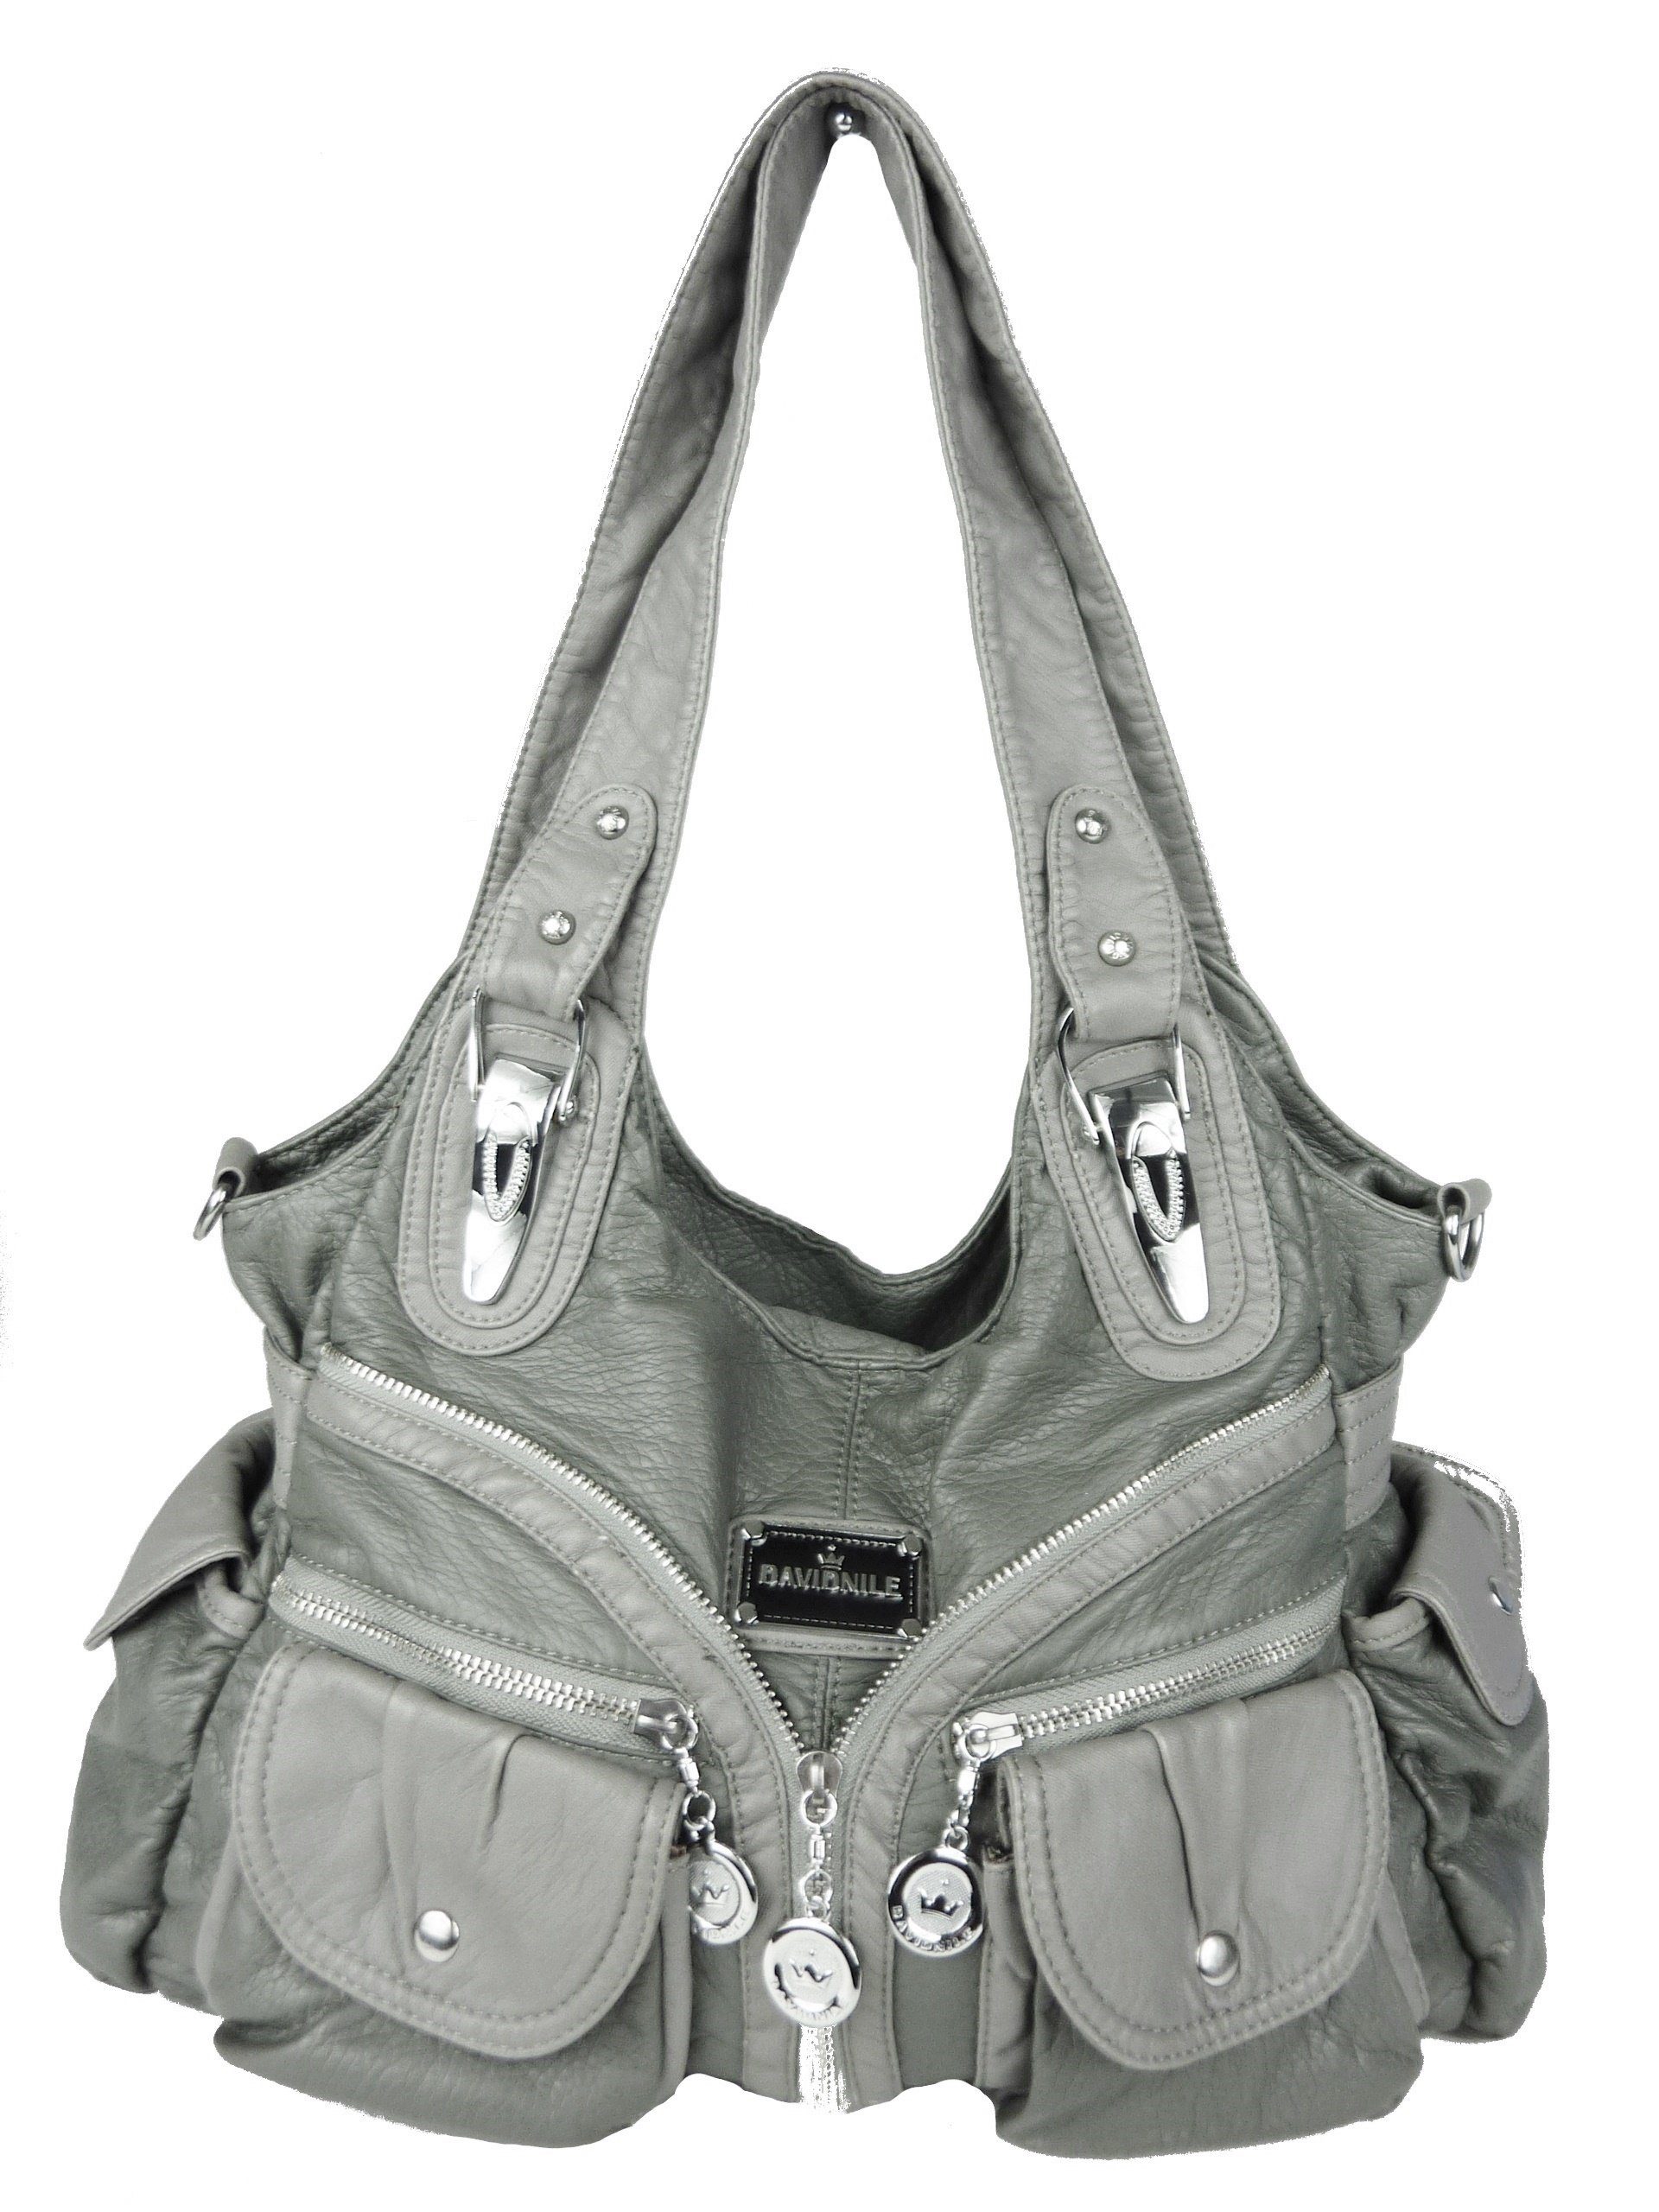 Taschen4life Schultertasche Damen Handtasche W7115 viele Fächer, washed  leather, abnehmbarer Schulterriemen, trendige Alltagstasche